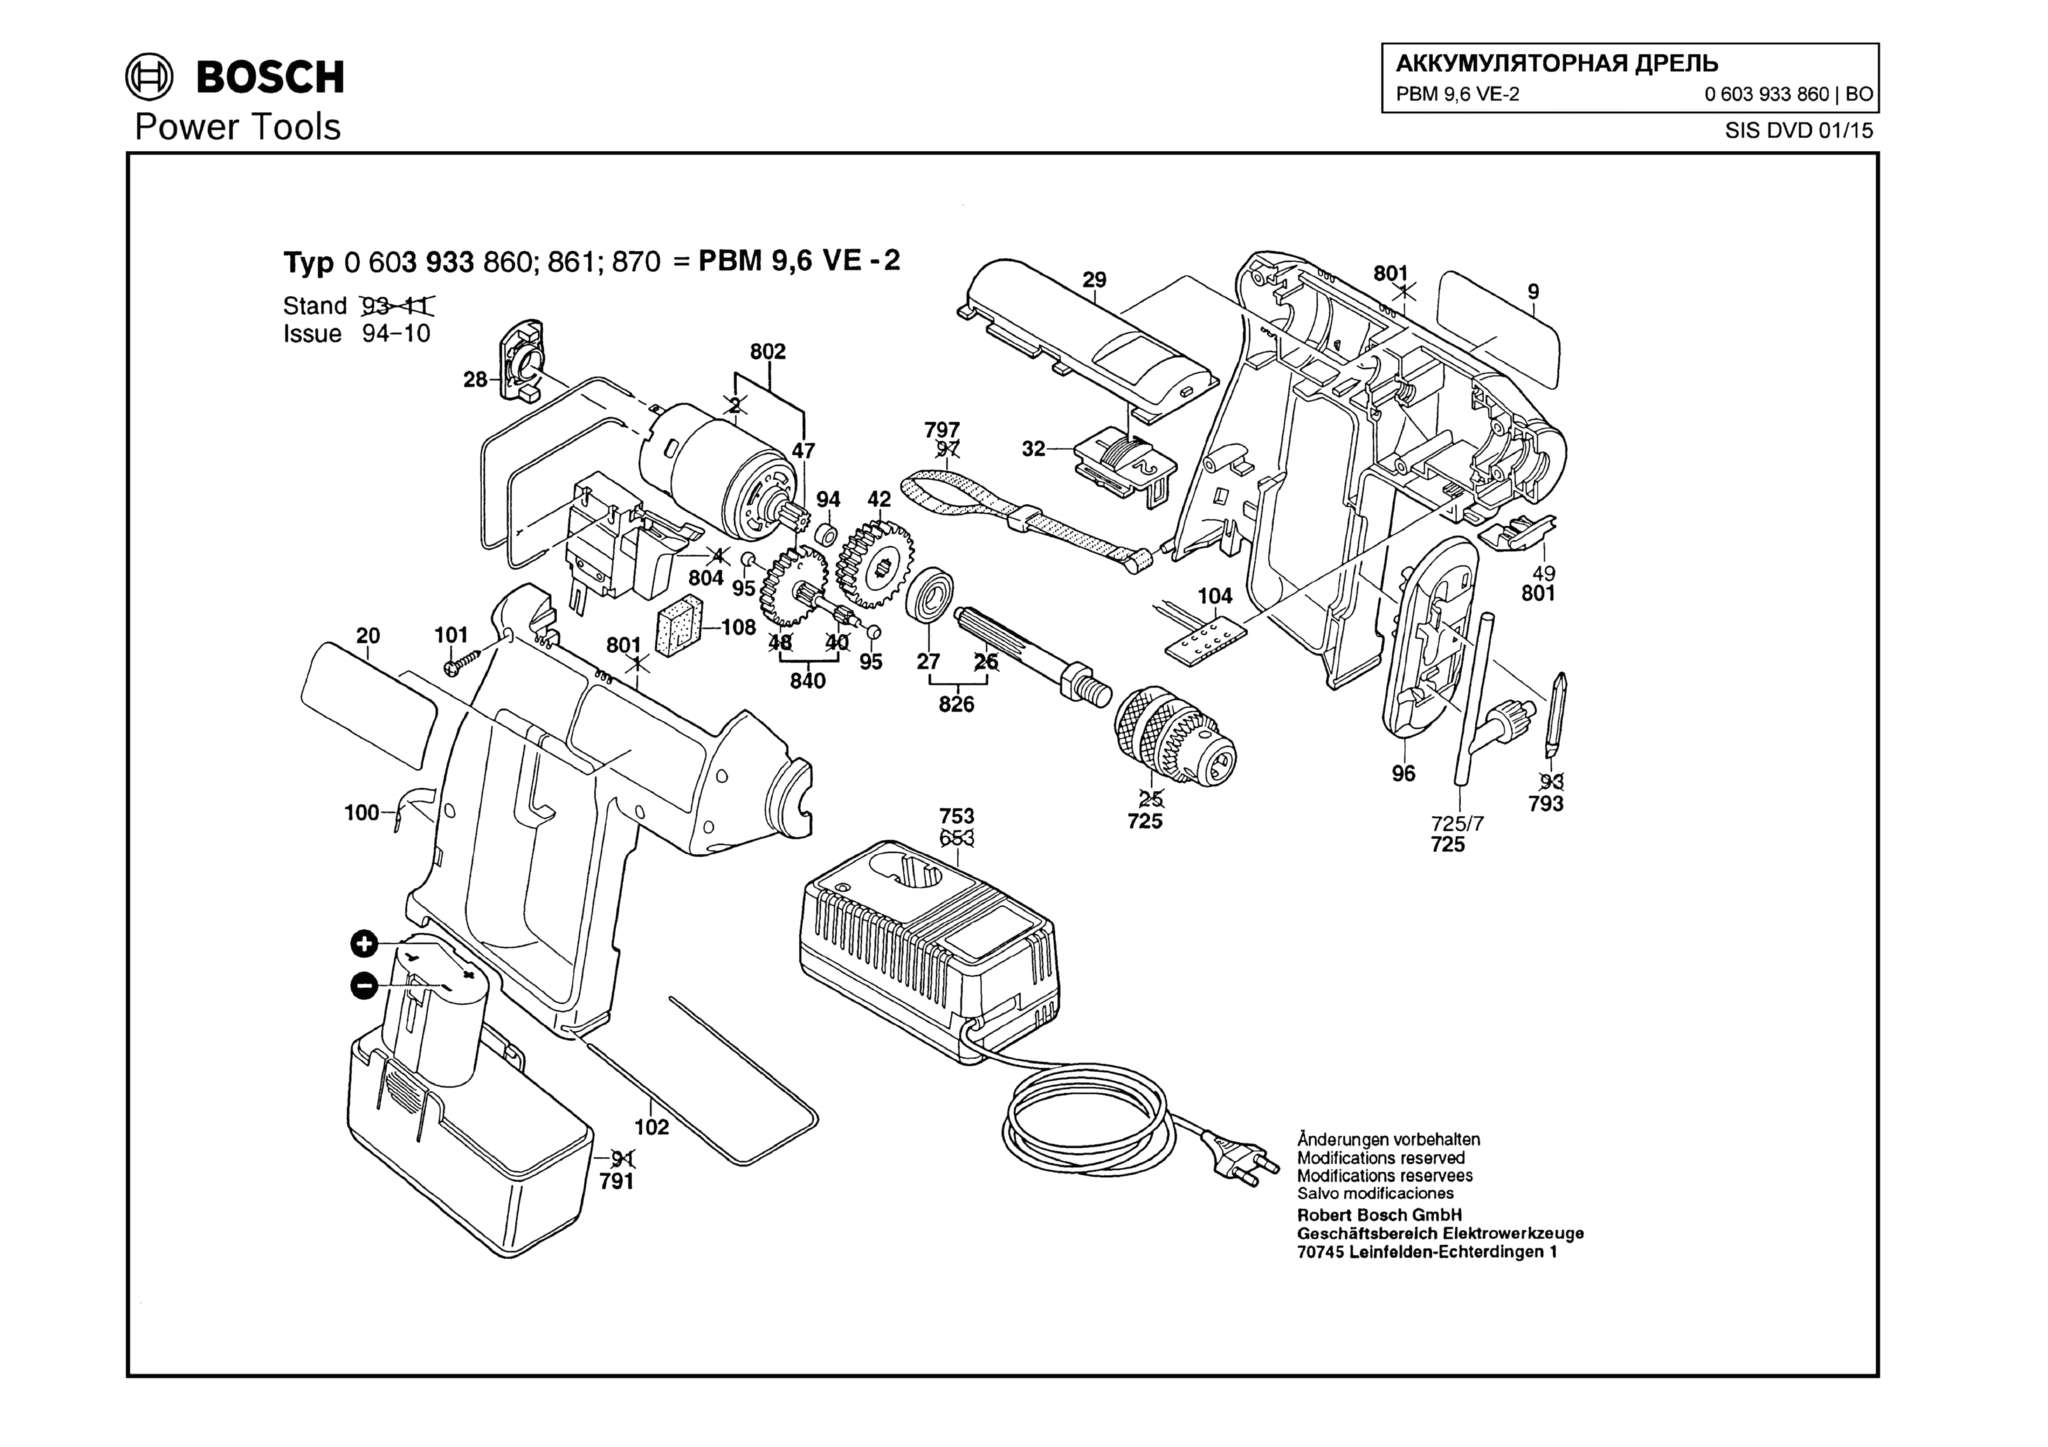 Запчасти, схема и деталировка Bosch PBM 9,6 VE-2 (ТИП 0603933860)